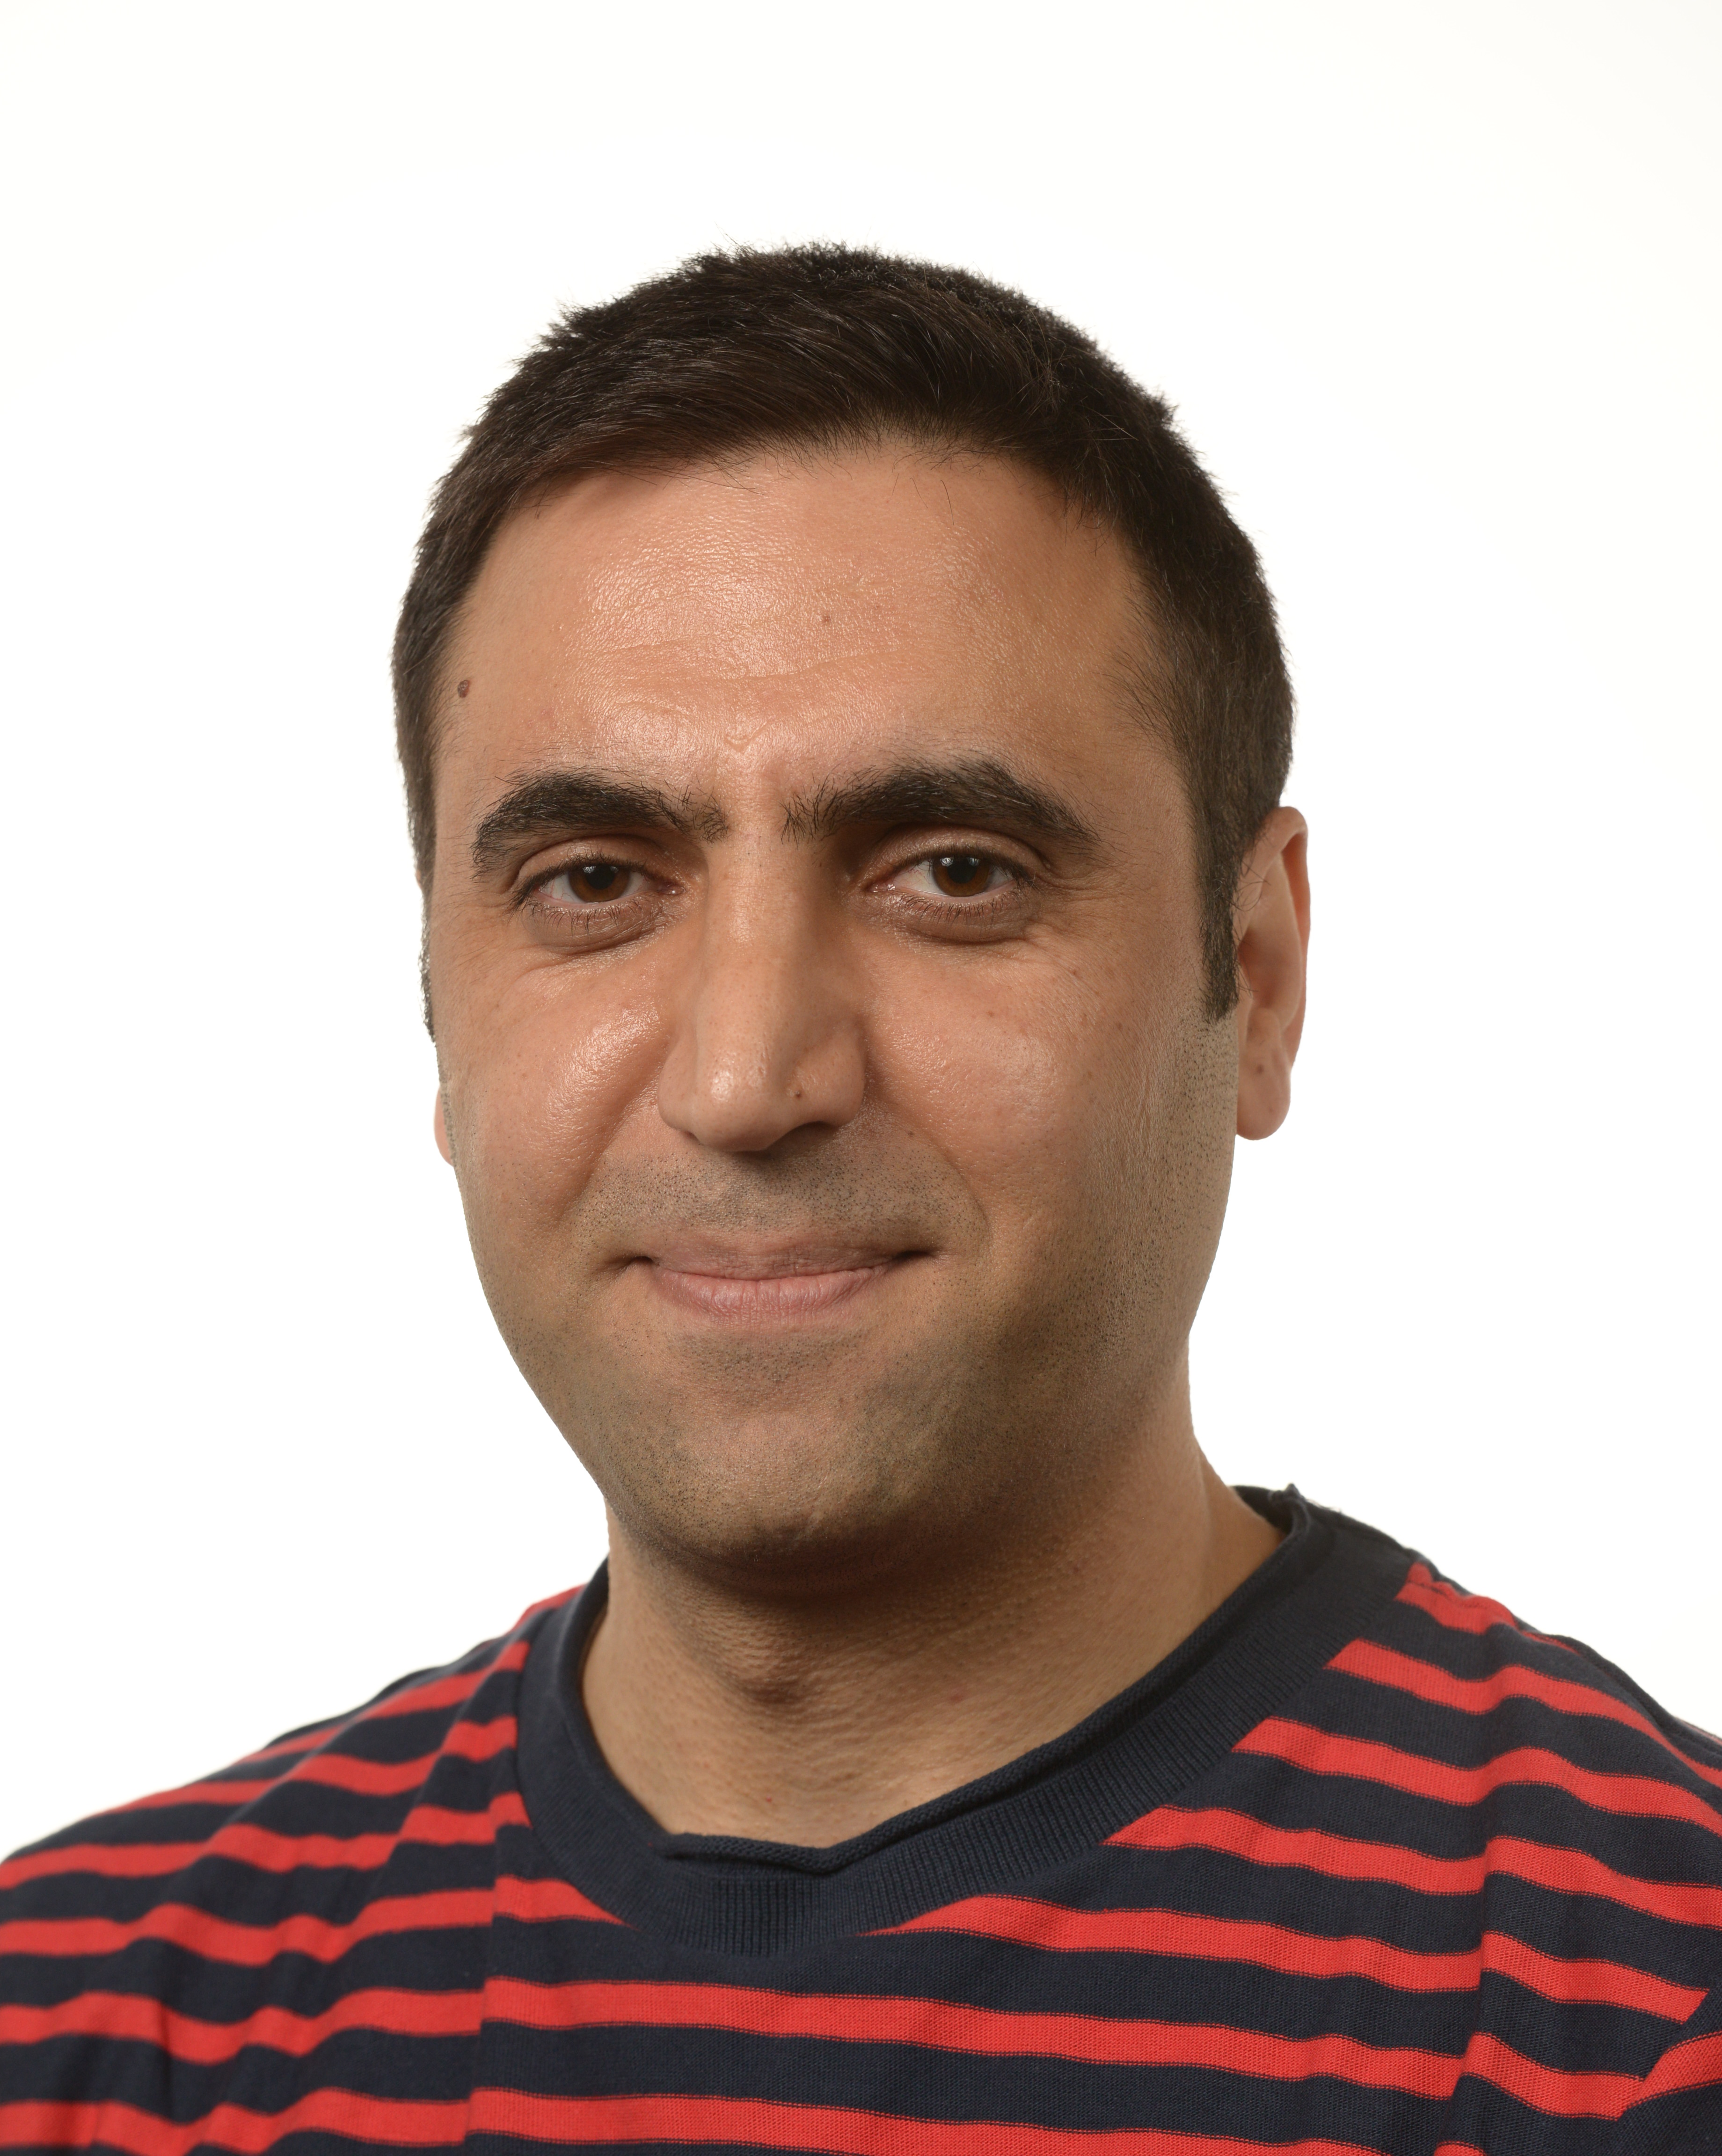 Dr. Naser Hossein Motlagh